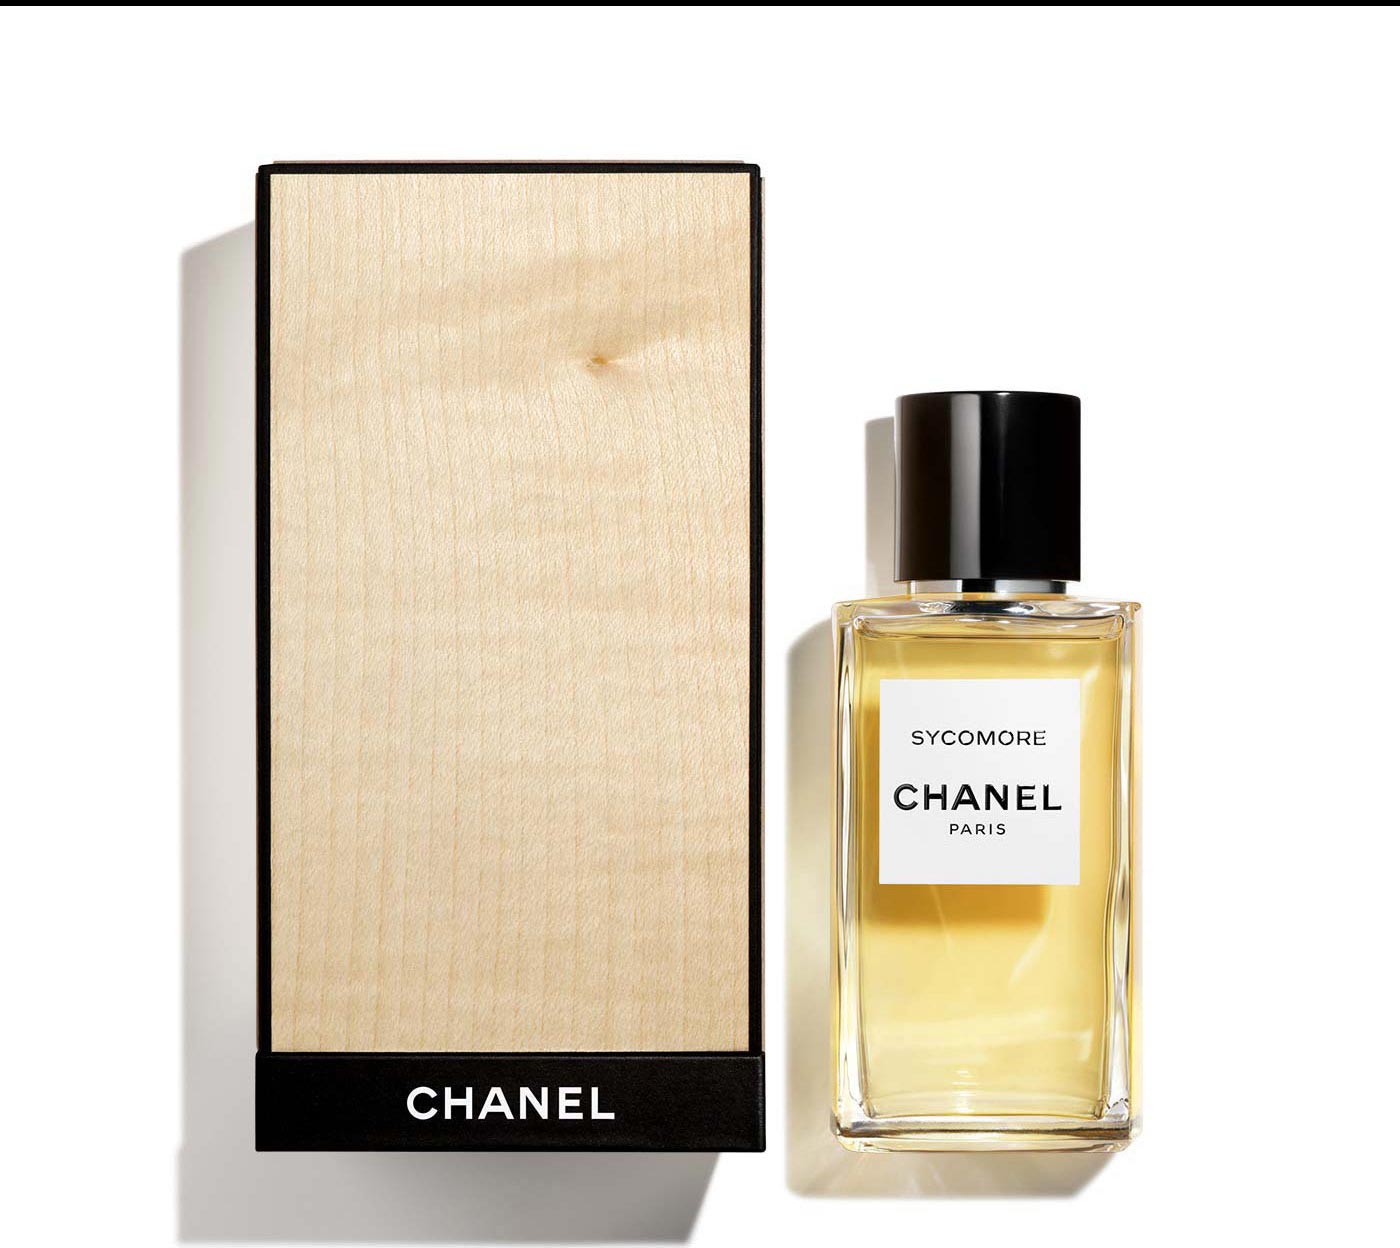 A bottle of SYCOMORE Eau de Parfum next to it's limited-edition, exclusive case